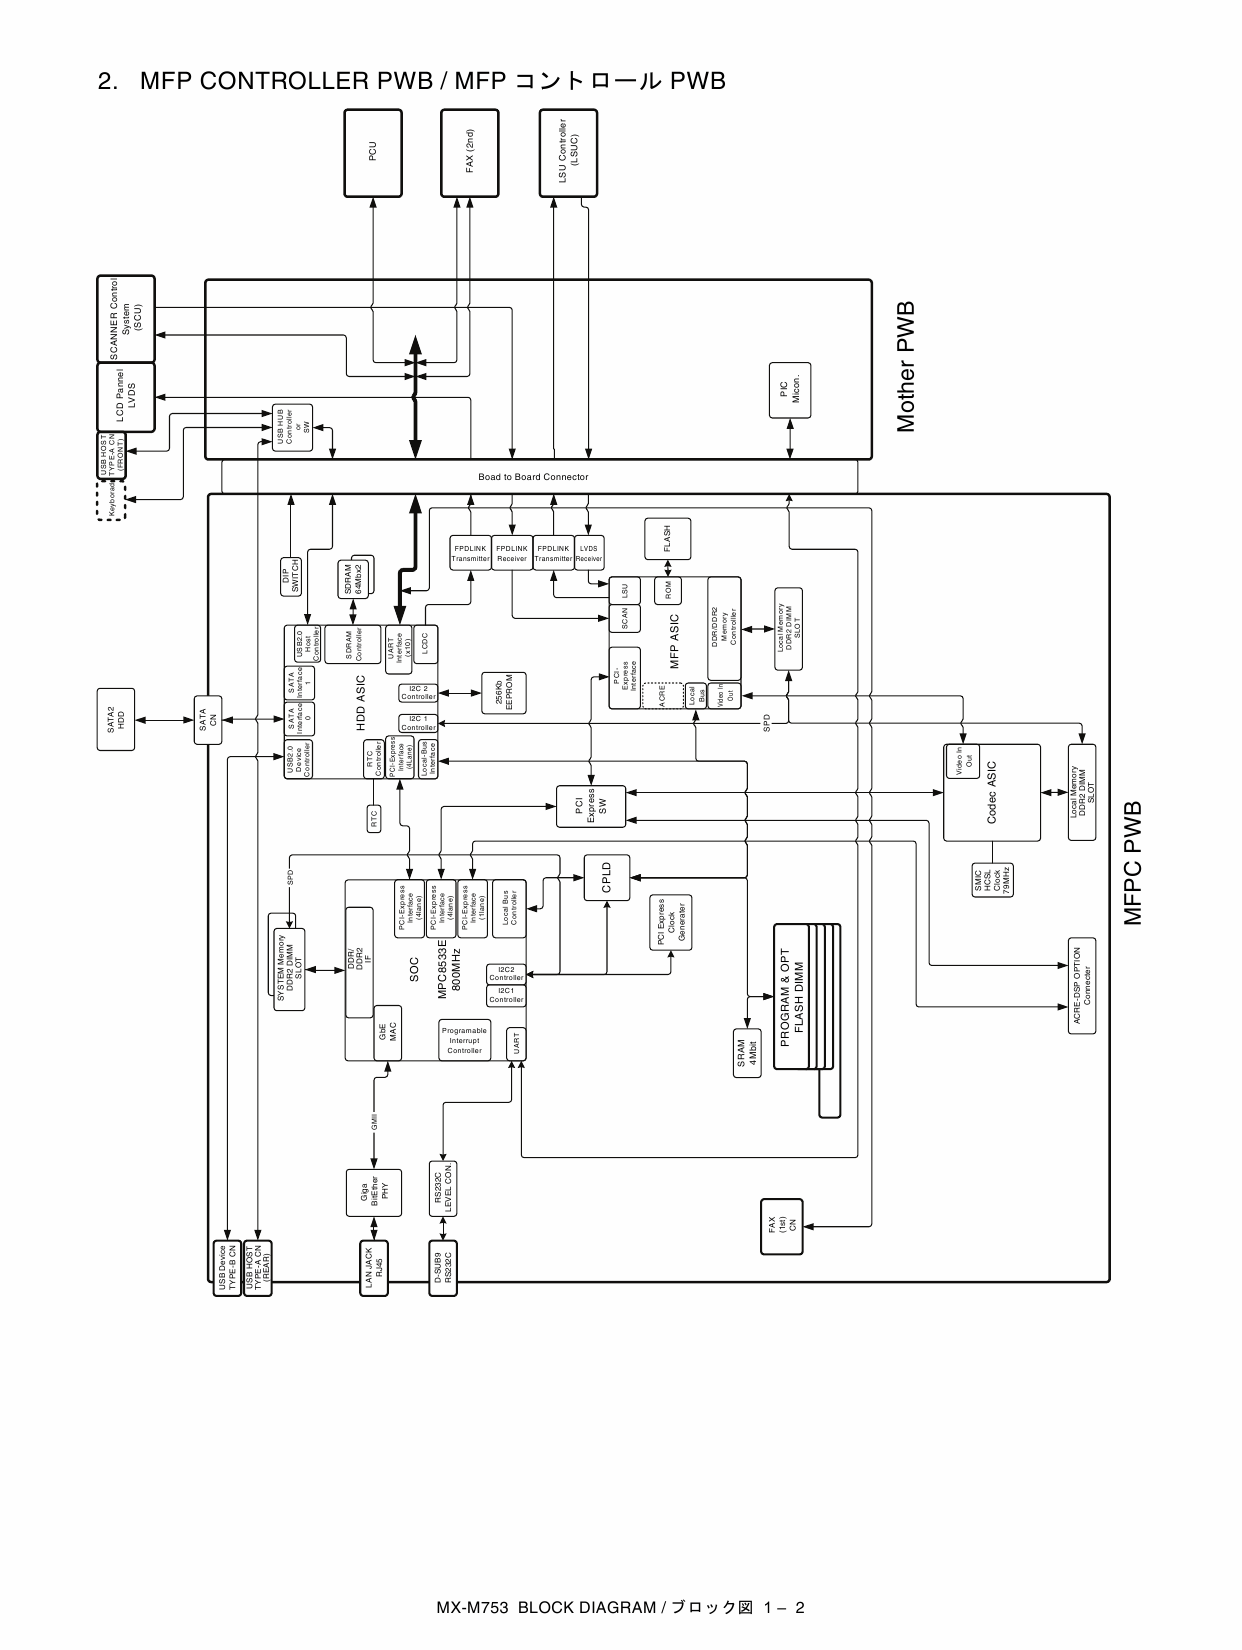 SHARP MX M623 M753 N U Circuit Diagrams-2